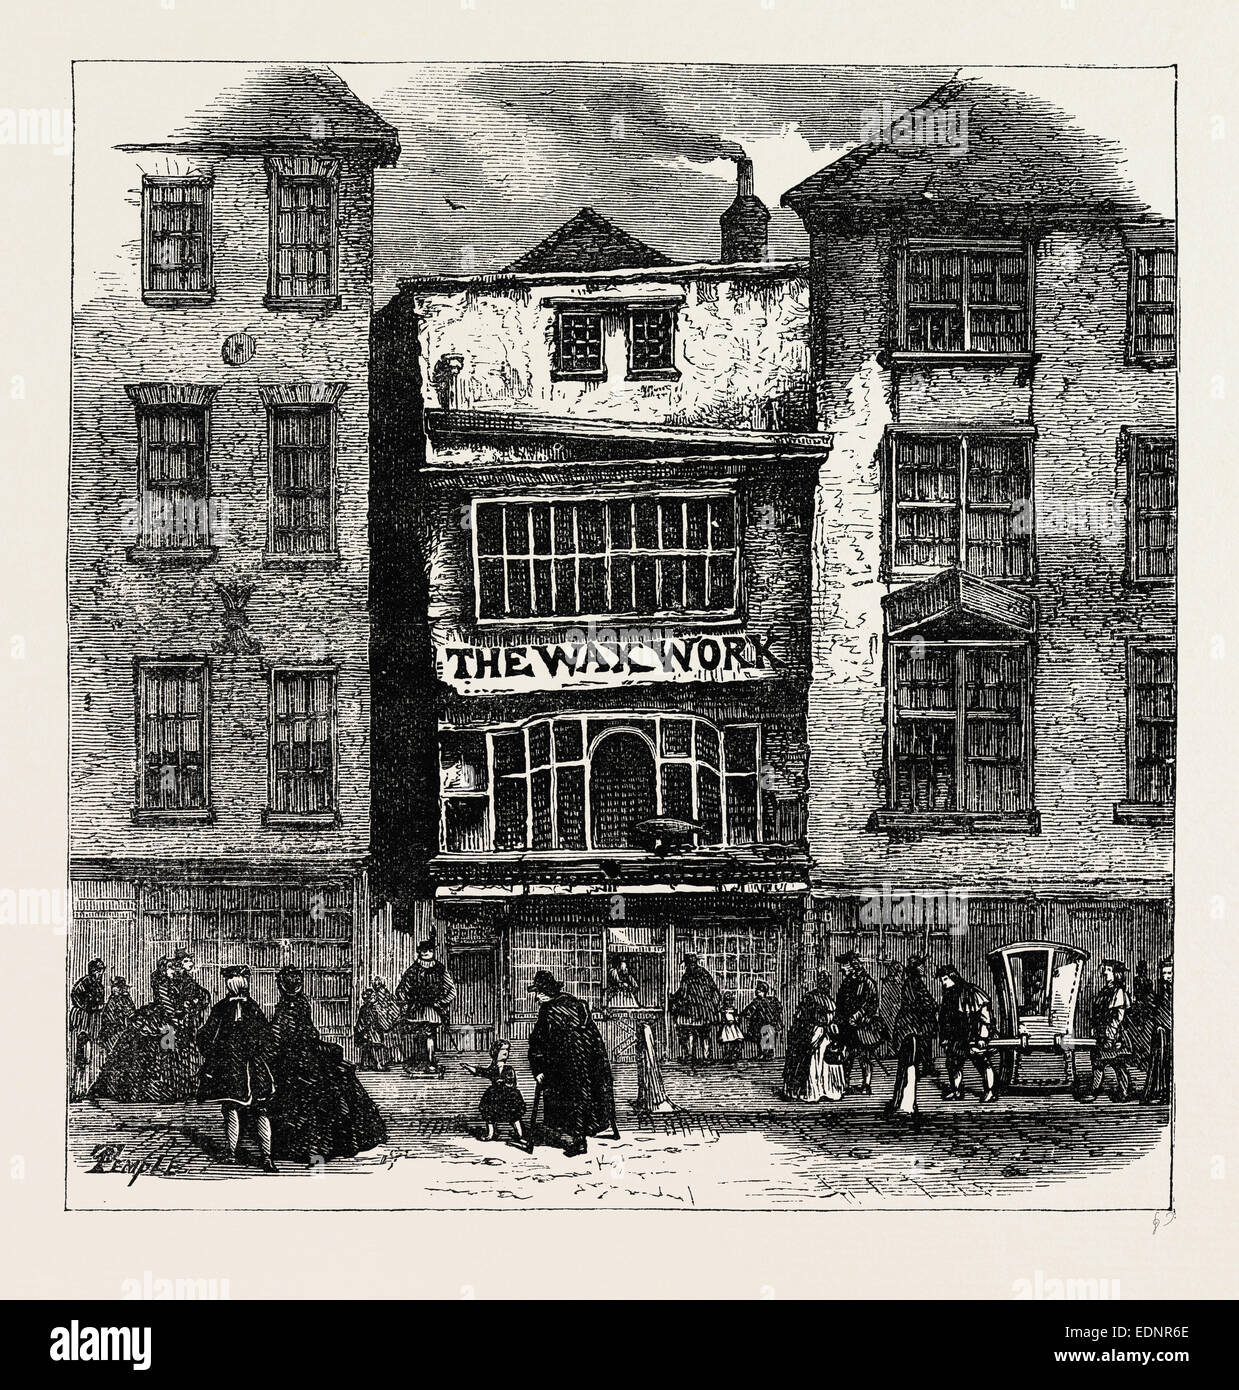 FRAU LACHS WAXWORK, FLEET STREET, PALAST VON HEINRICH VIII. UND KARDINAL WOLSEY. London, UK, 19. Jahrhundert Gravur Stockfoto